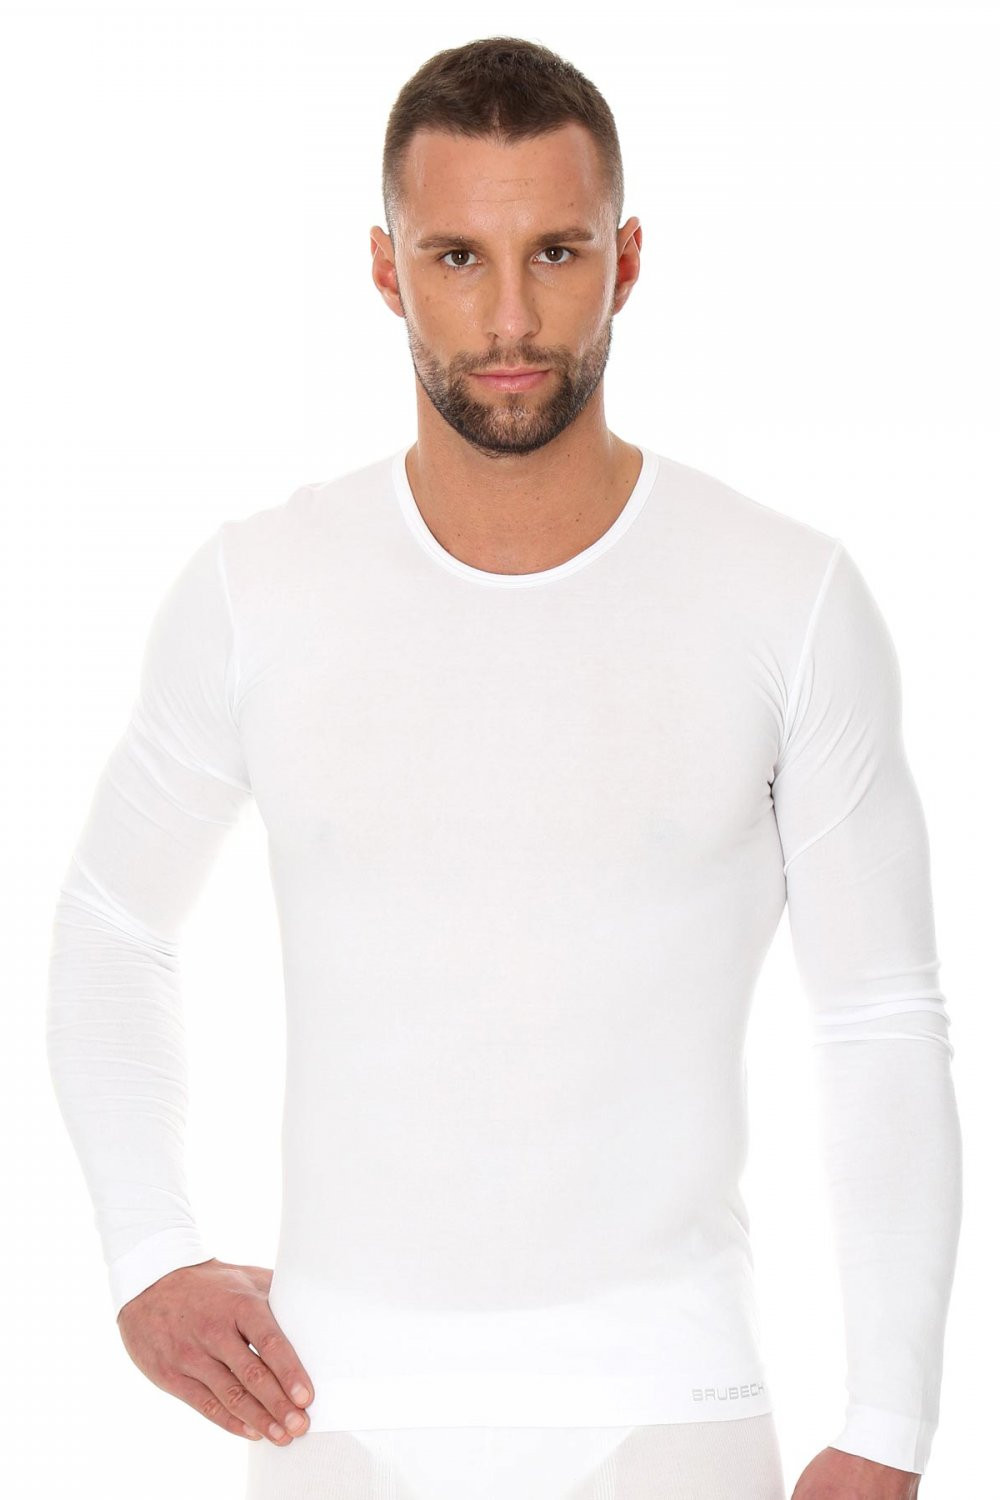 Pánské tričko 1120 white - BRUBECK Bílá L